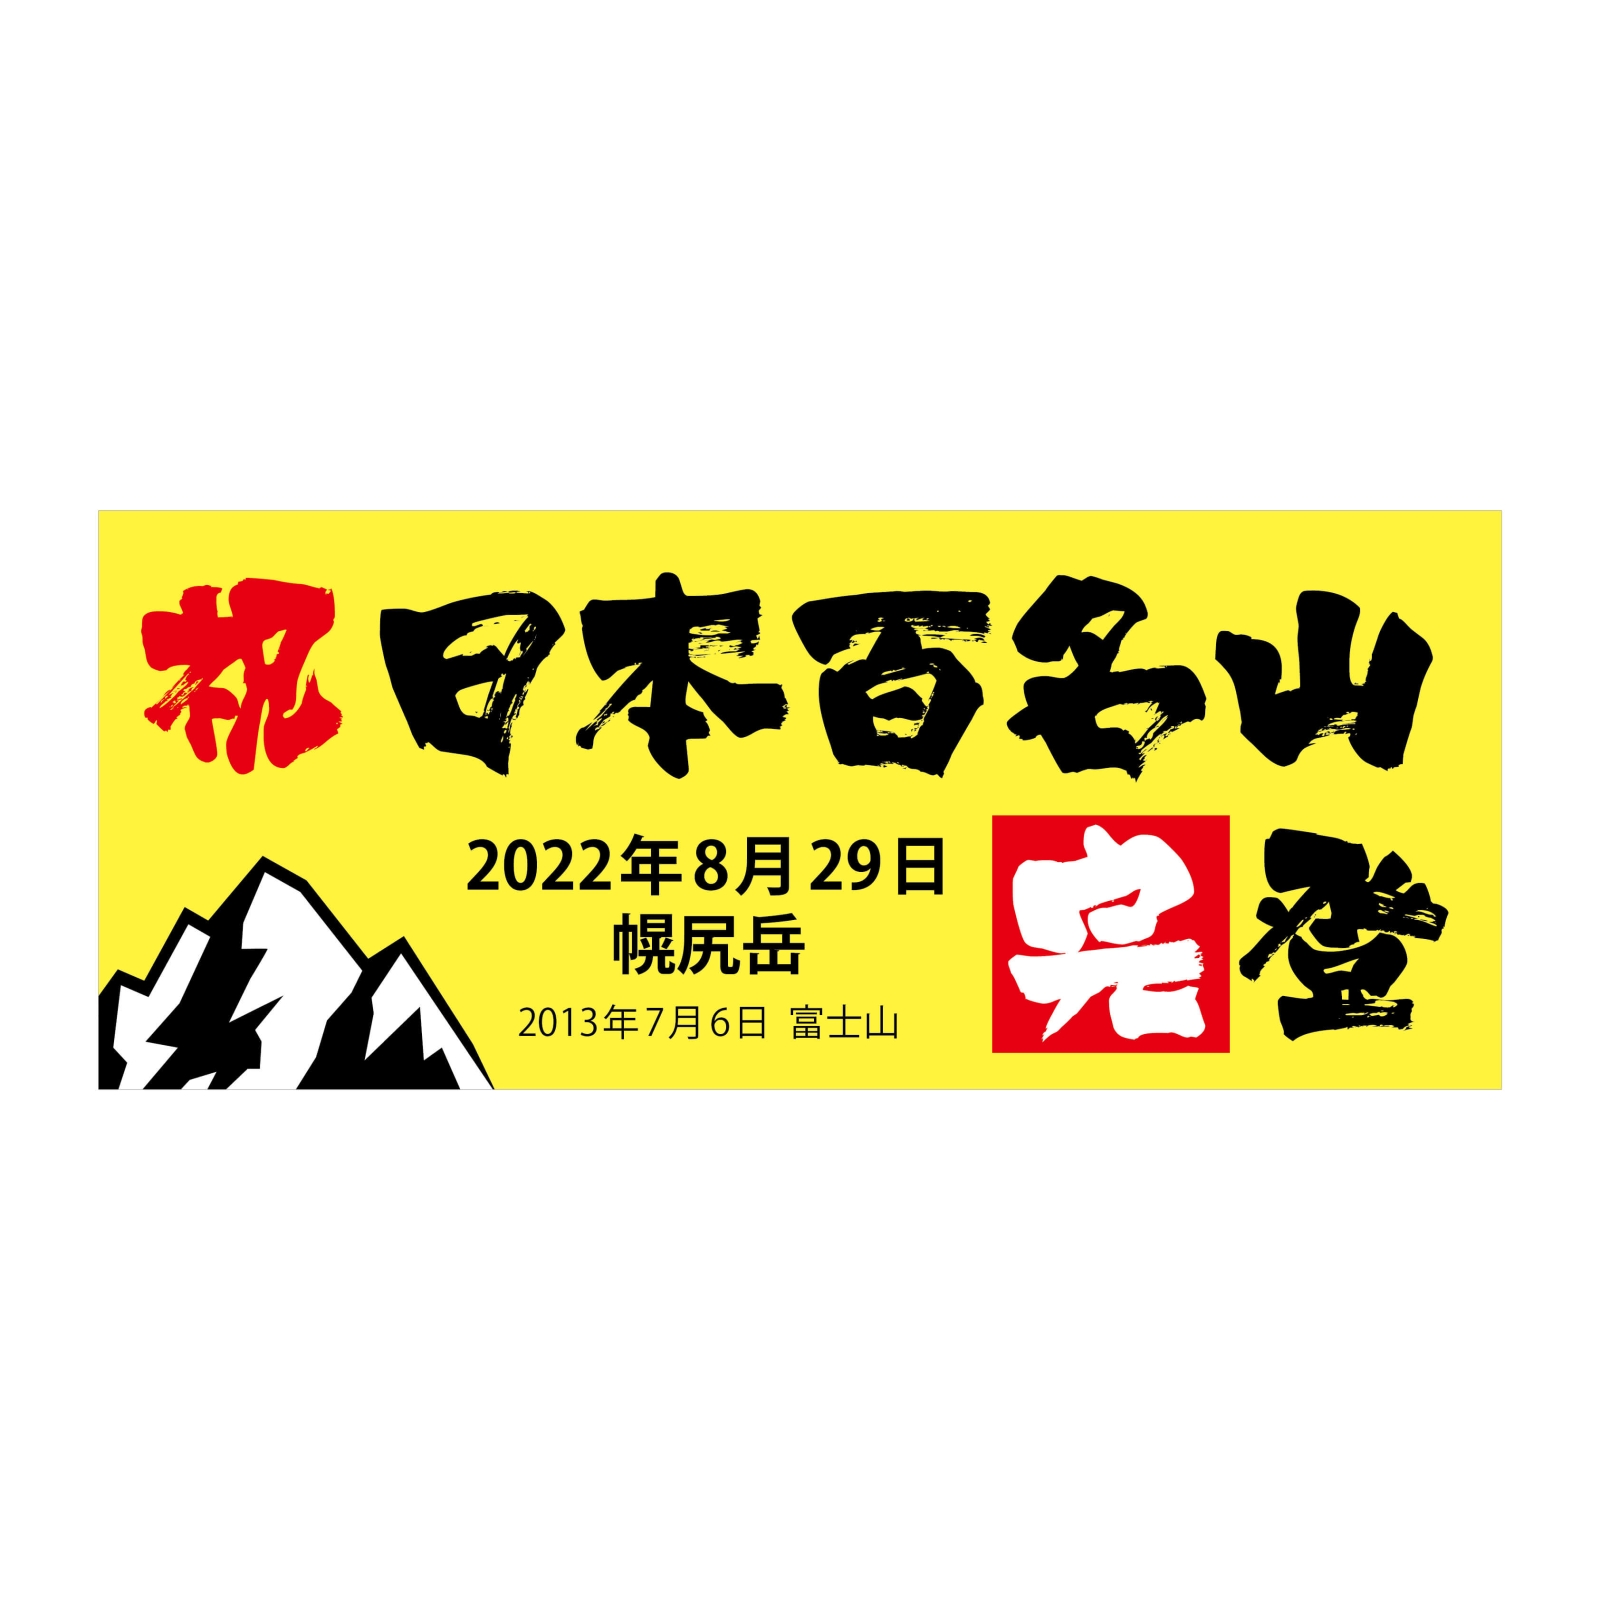 日本百名山完登の黄色いタオル